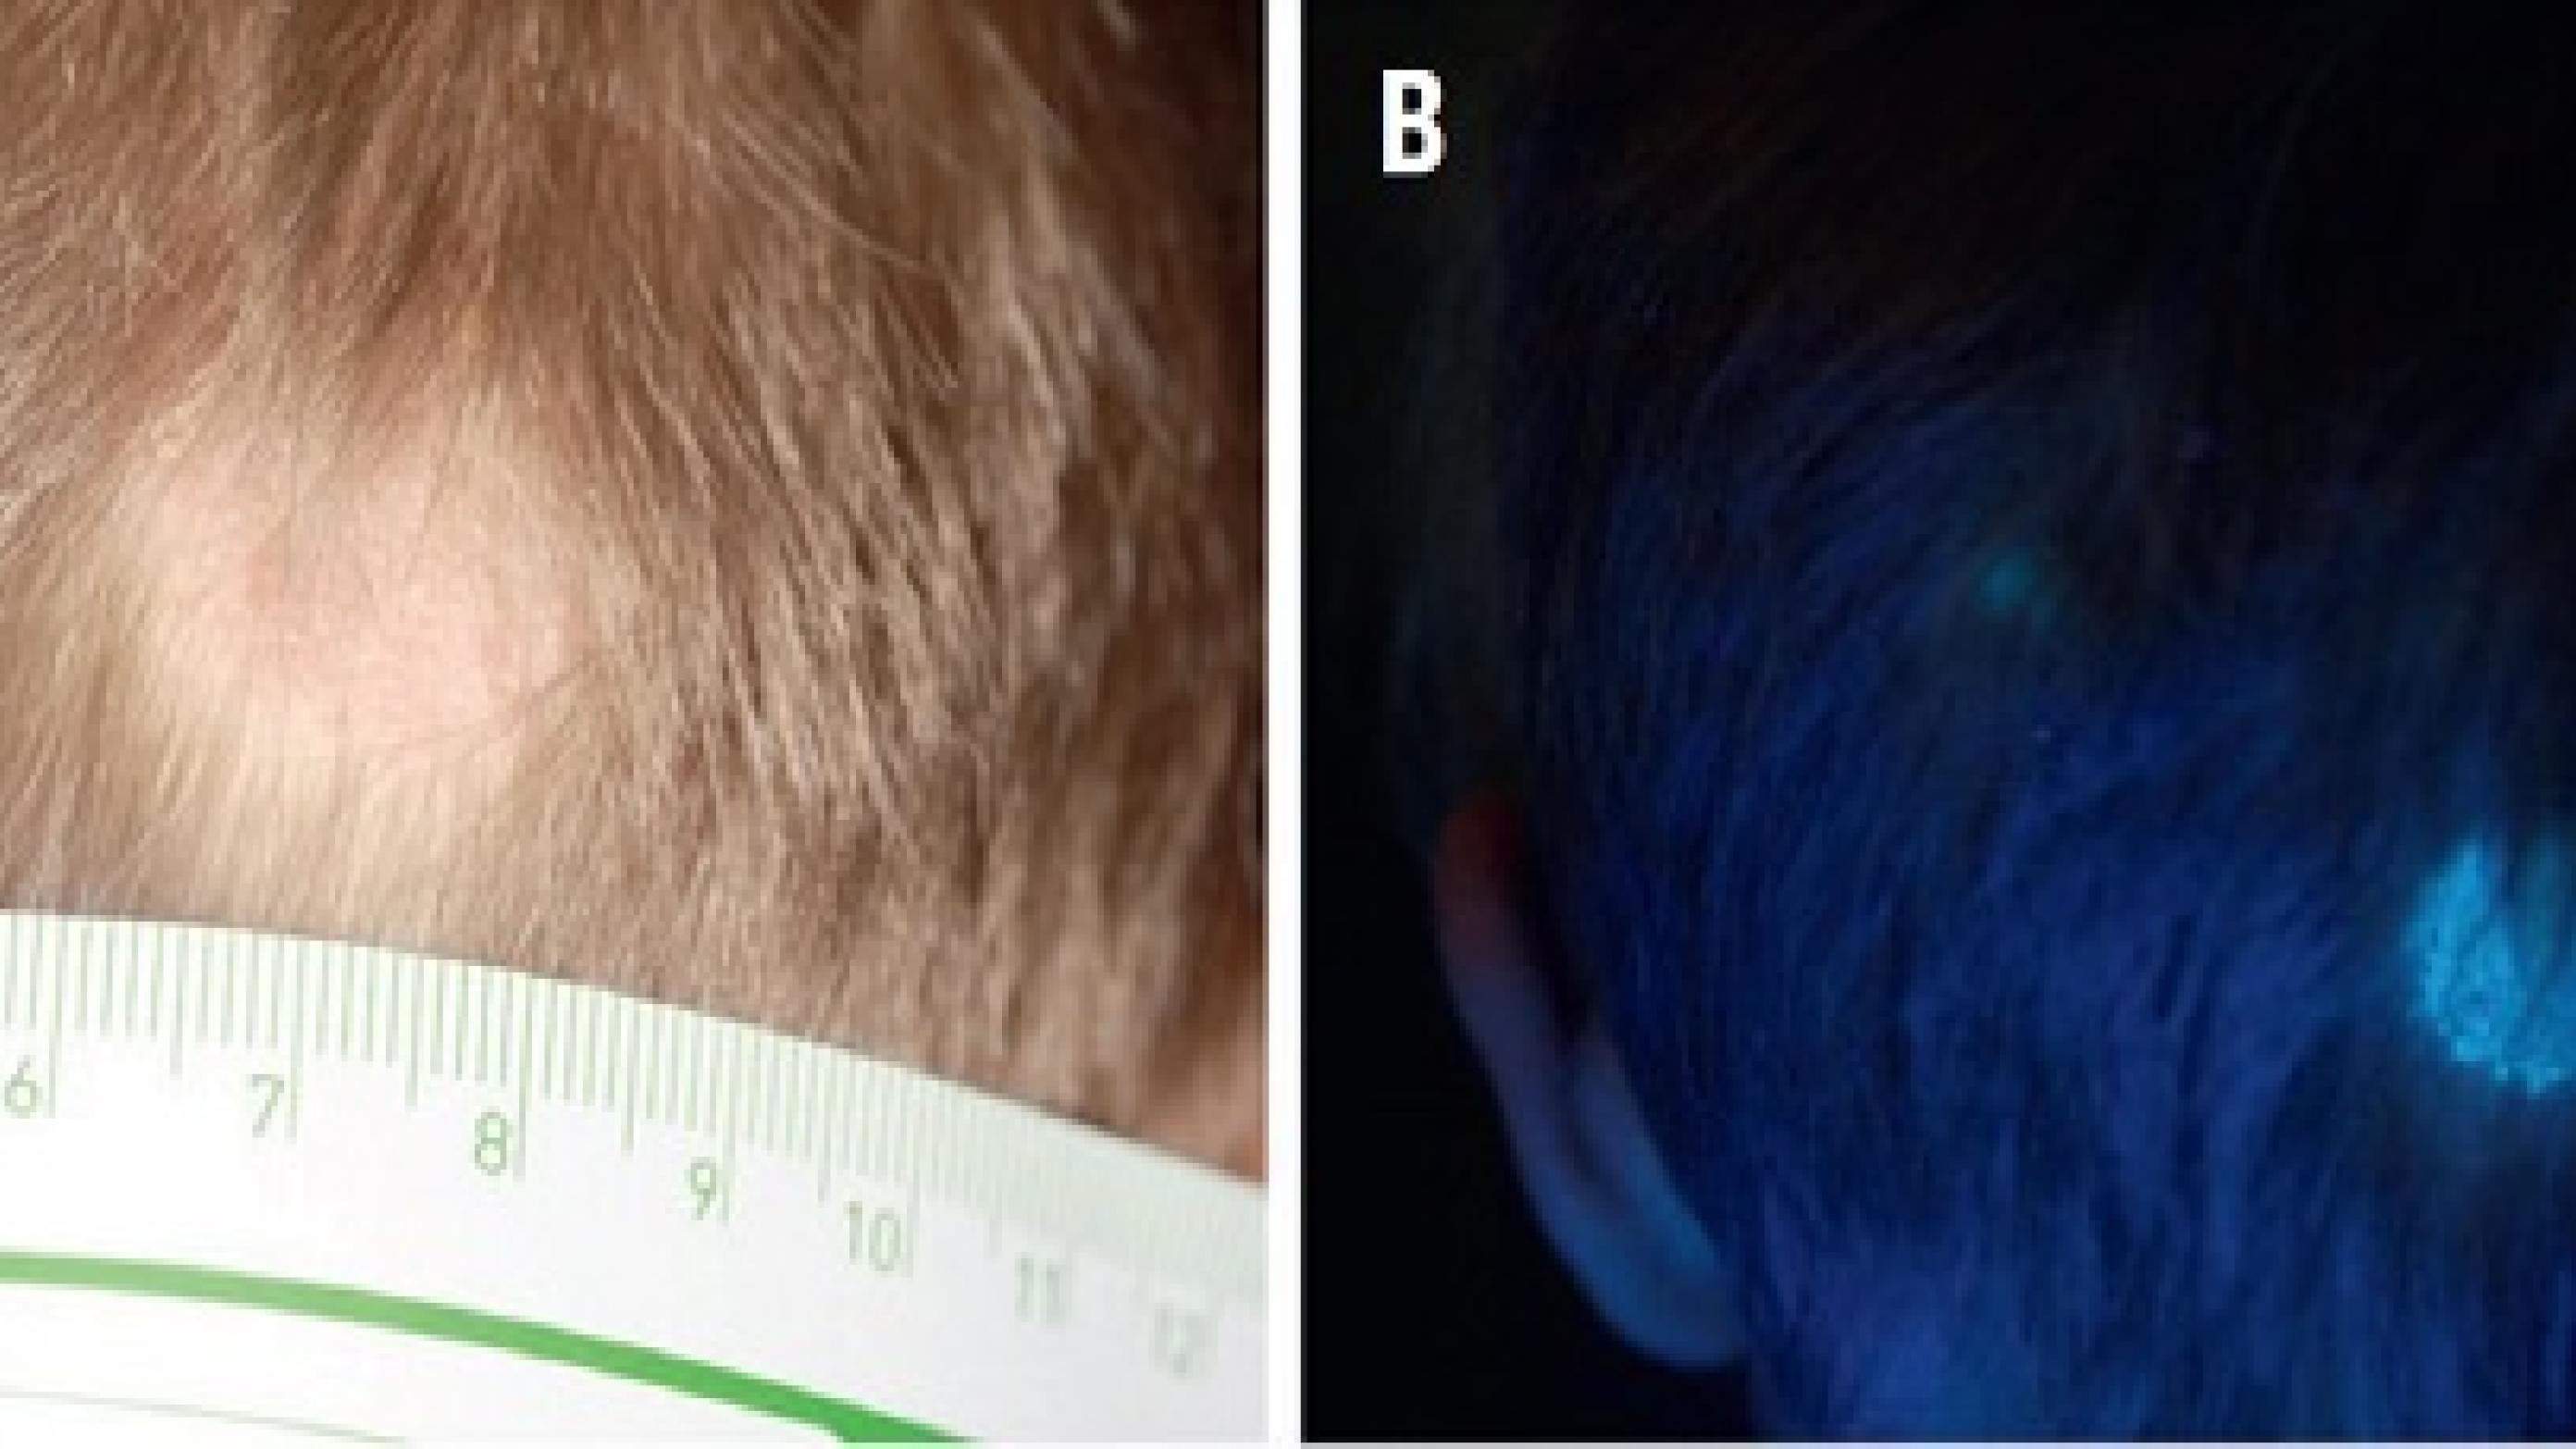 A. Klinisk præsentation af tinea capitis forårsaget af Microsporum canis. B. Samme patient som på billede A, her undersøgt med Wood’s light. M. canis fluorescerer med en lys grønlig farve.